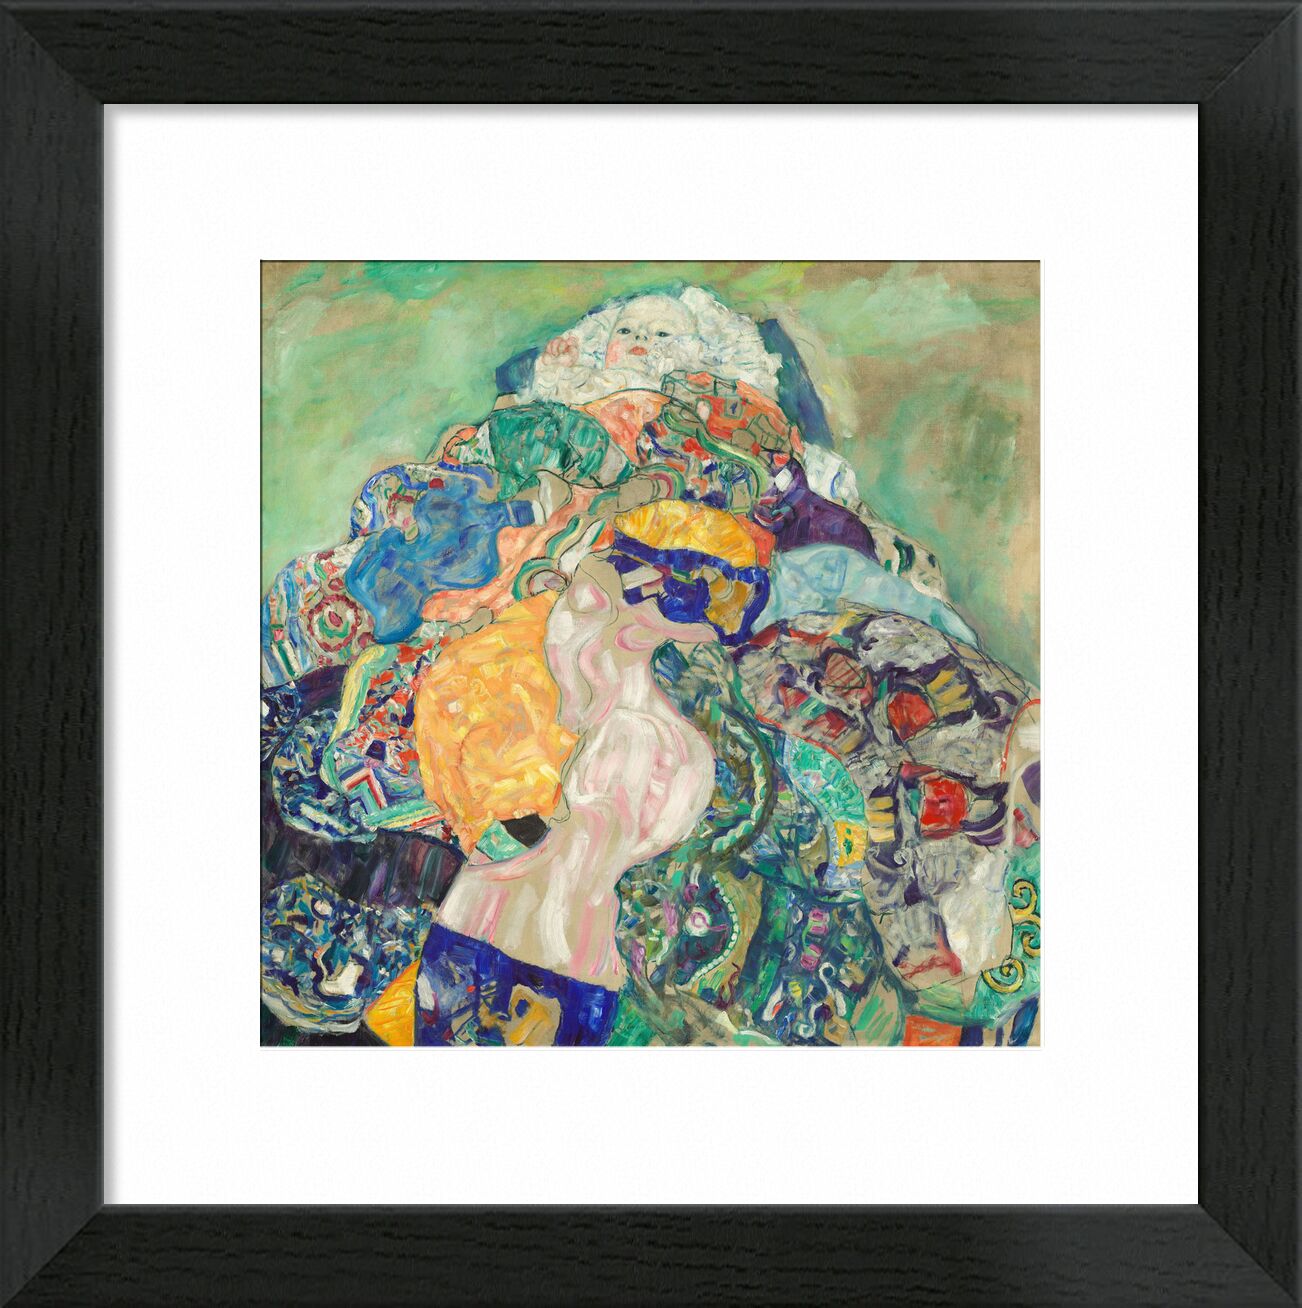 Baby (Wiege) - Gustav Klimt von Bildende Kunst, Prodi Art, KLIMT, Baby, Kindheit, Zeichnung, Malerei, Kind, Wiege